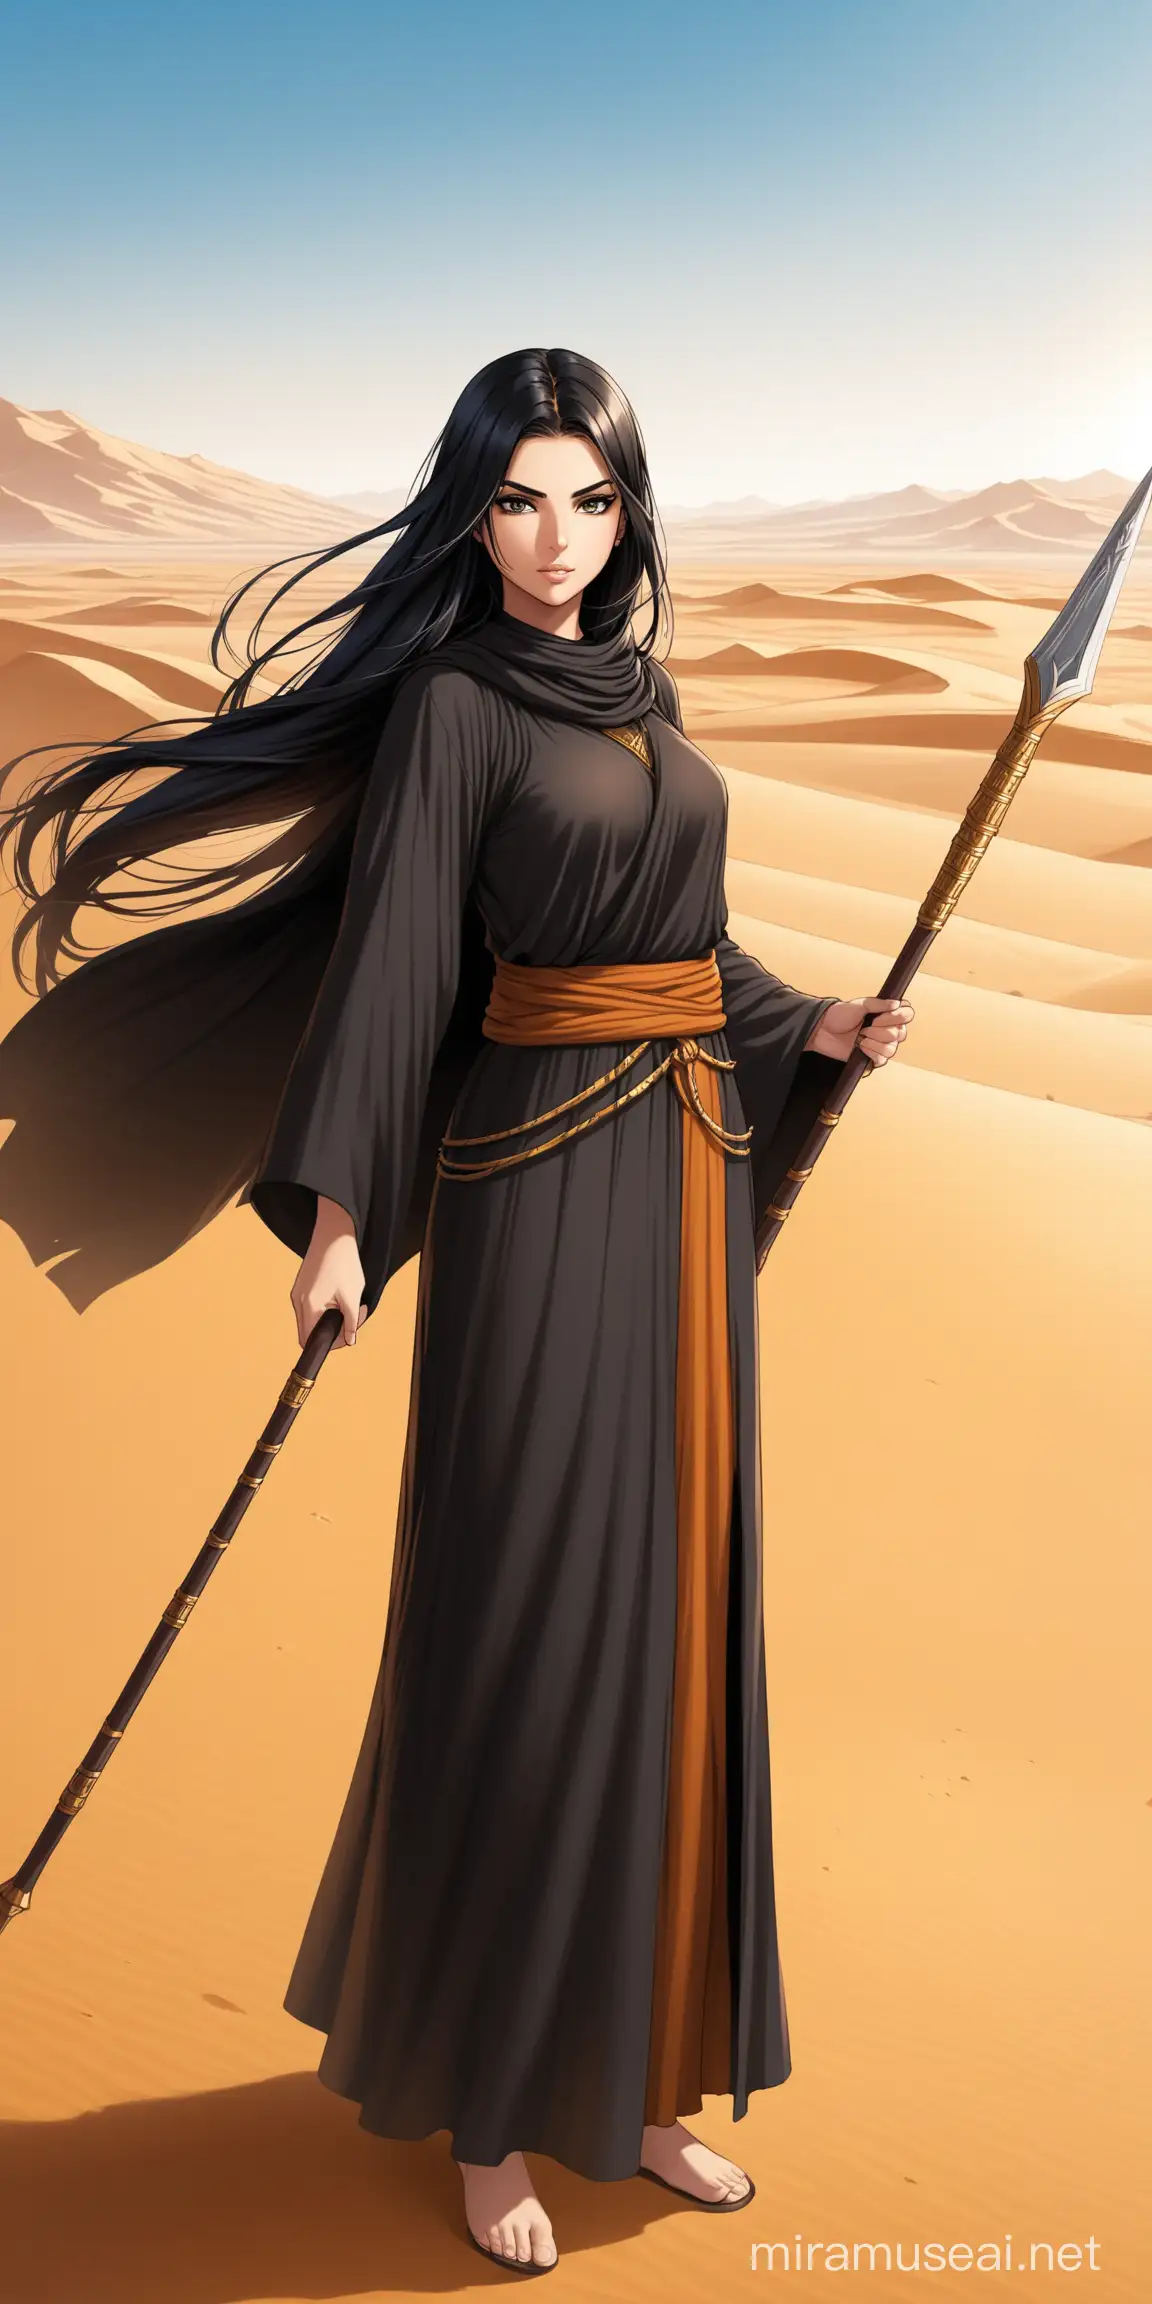 Female, arab girl, warrior monk, black robe, black hair, standing, holding spear, long hair, desert background